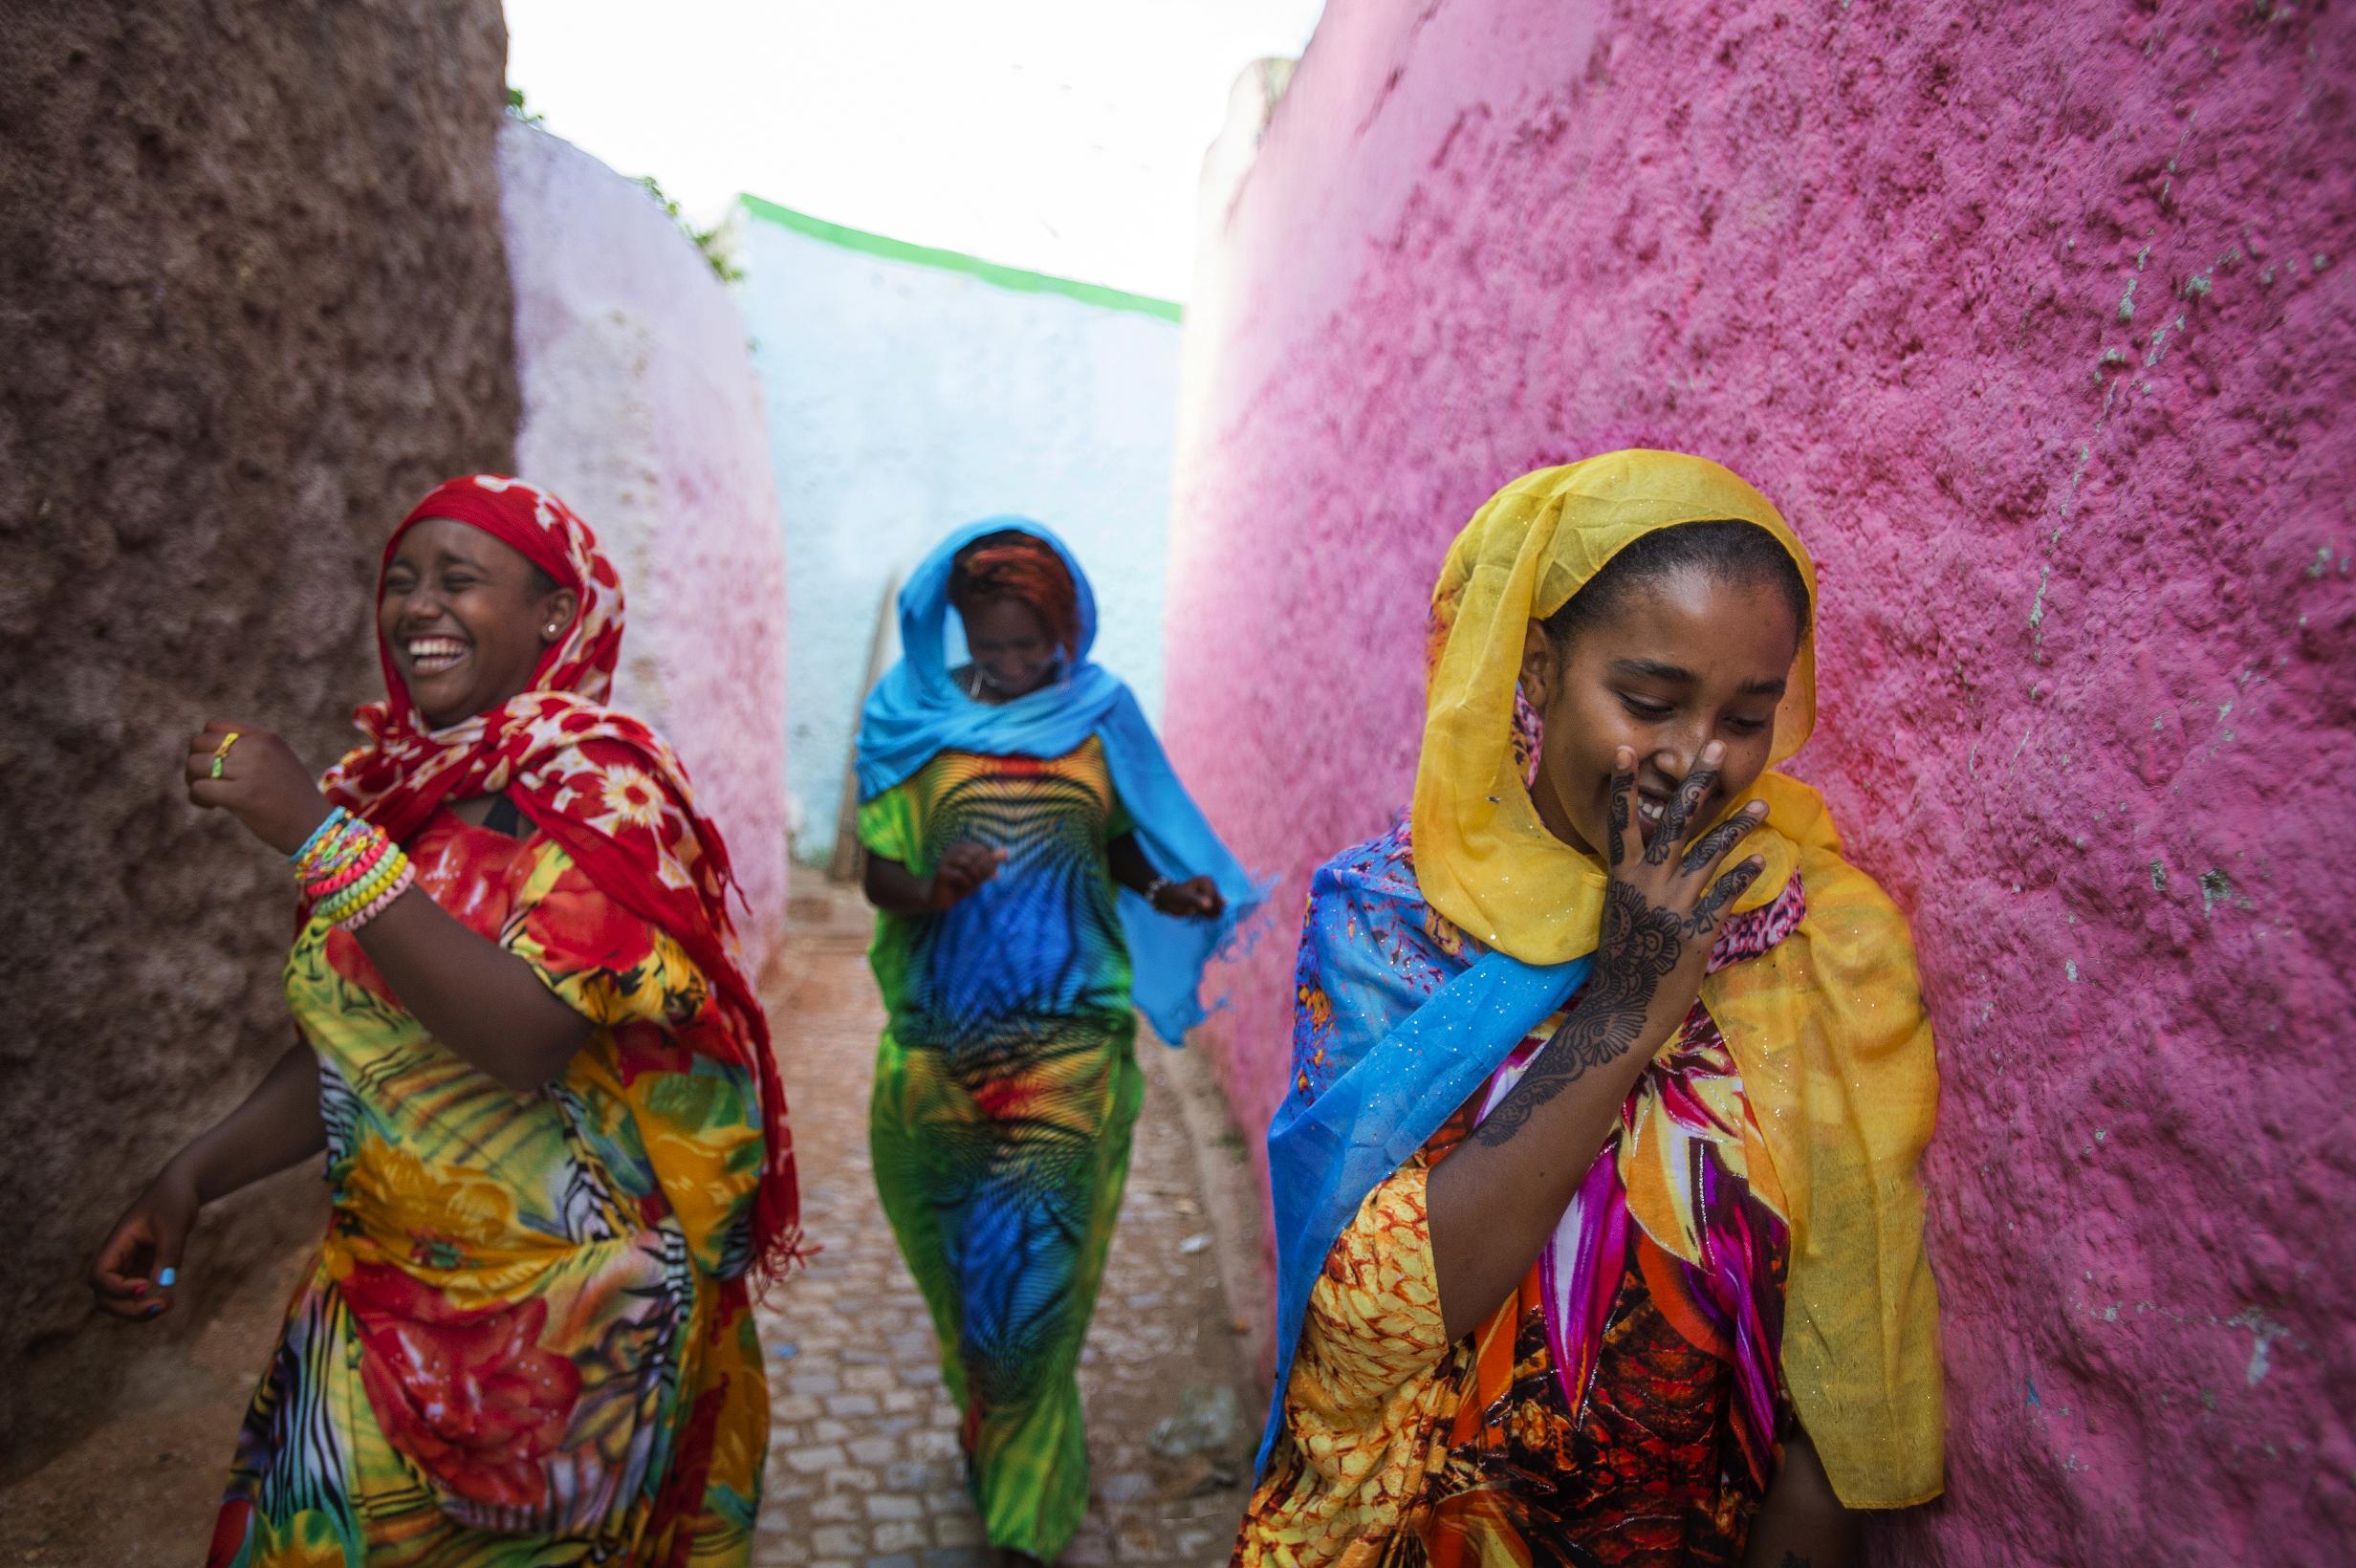 Femmes Harar. La population éthiopienne est composée de près de 80 ethnies. Photo OT.